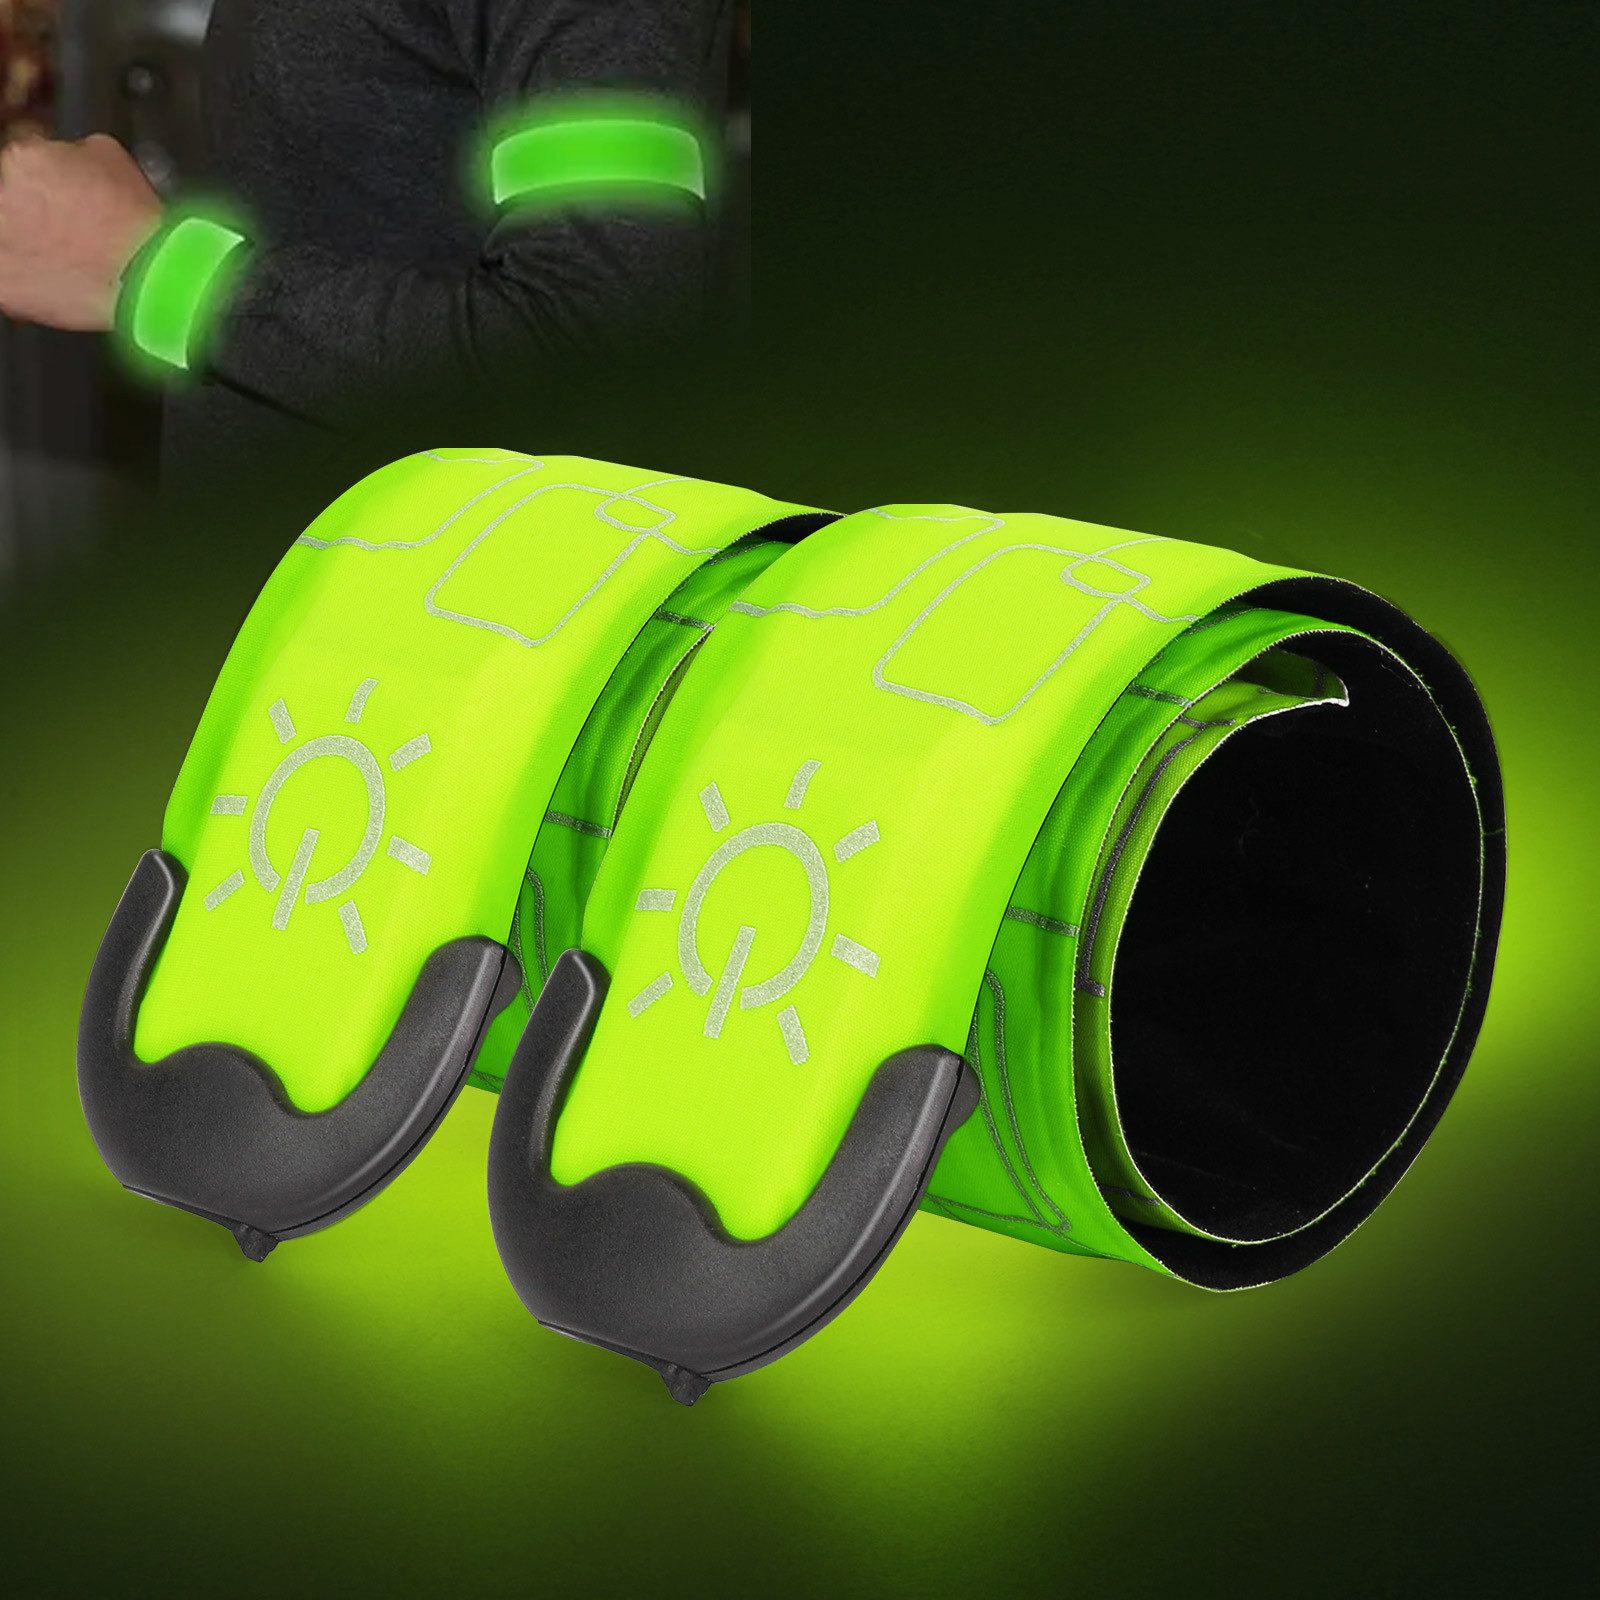 BlingBin Armband LED Armband Aufladbar Reflective LED Leuchtarmband mit USB (2er Set, 2-tlg., 2pcs), LED Slap Safety Armband, Unisex für Nachtlauf, Radfahren, Joggen